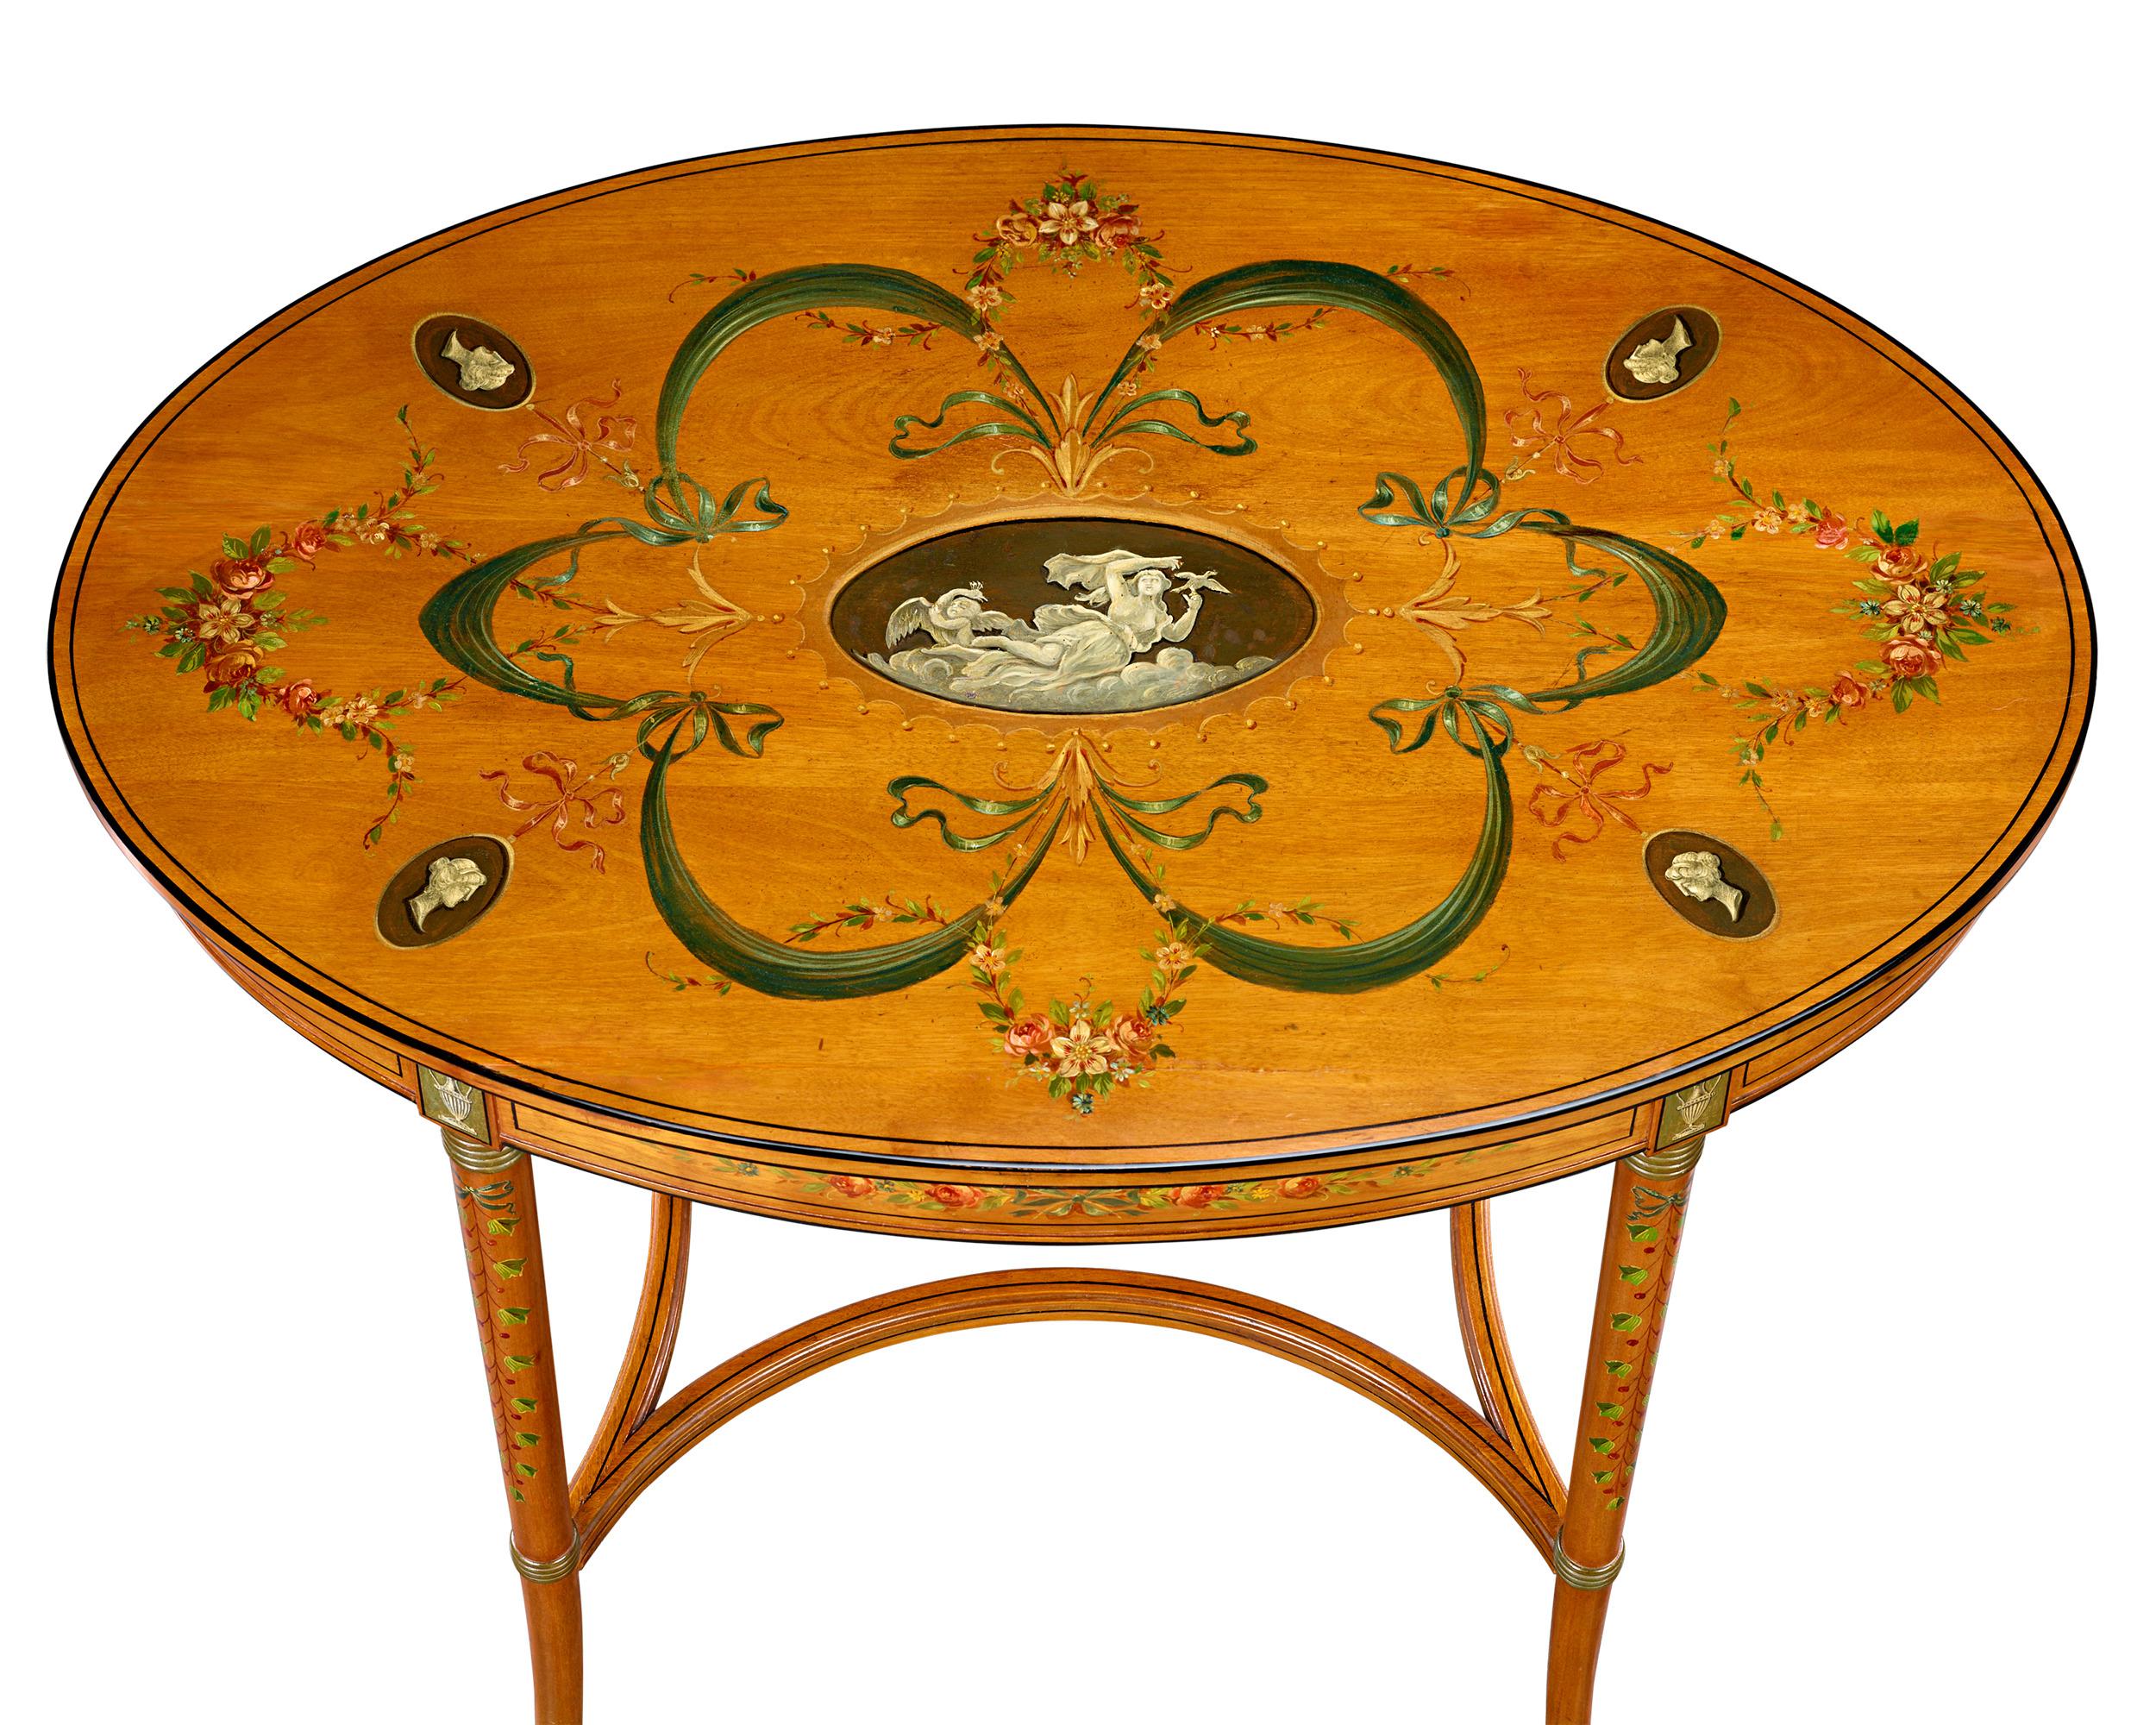 Cette paire exquise de tables de salon en bois satiné anglais peint à la main est ornée de détails complexes inspirés de thèmes floraux et classiques, caractéristiques du style néo-zélandais Sheraton. La finesse du bois et la délicatesse des motifs